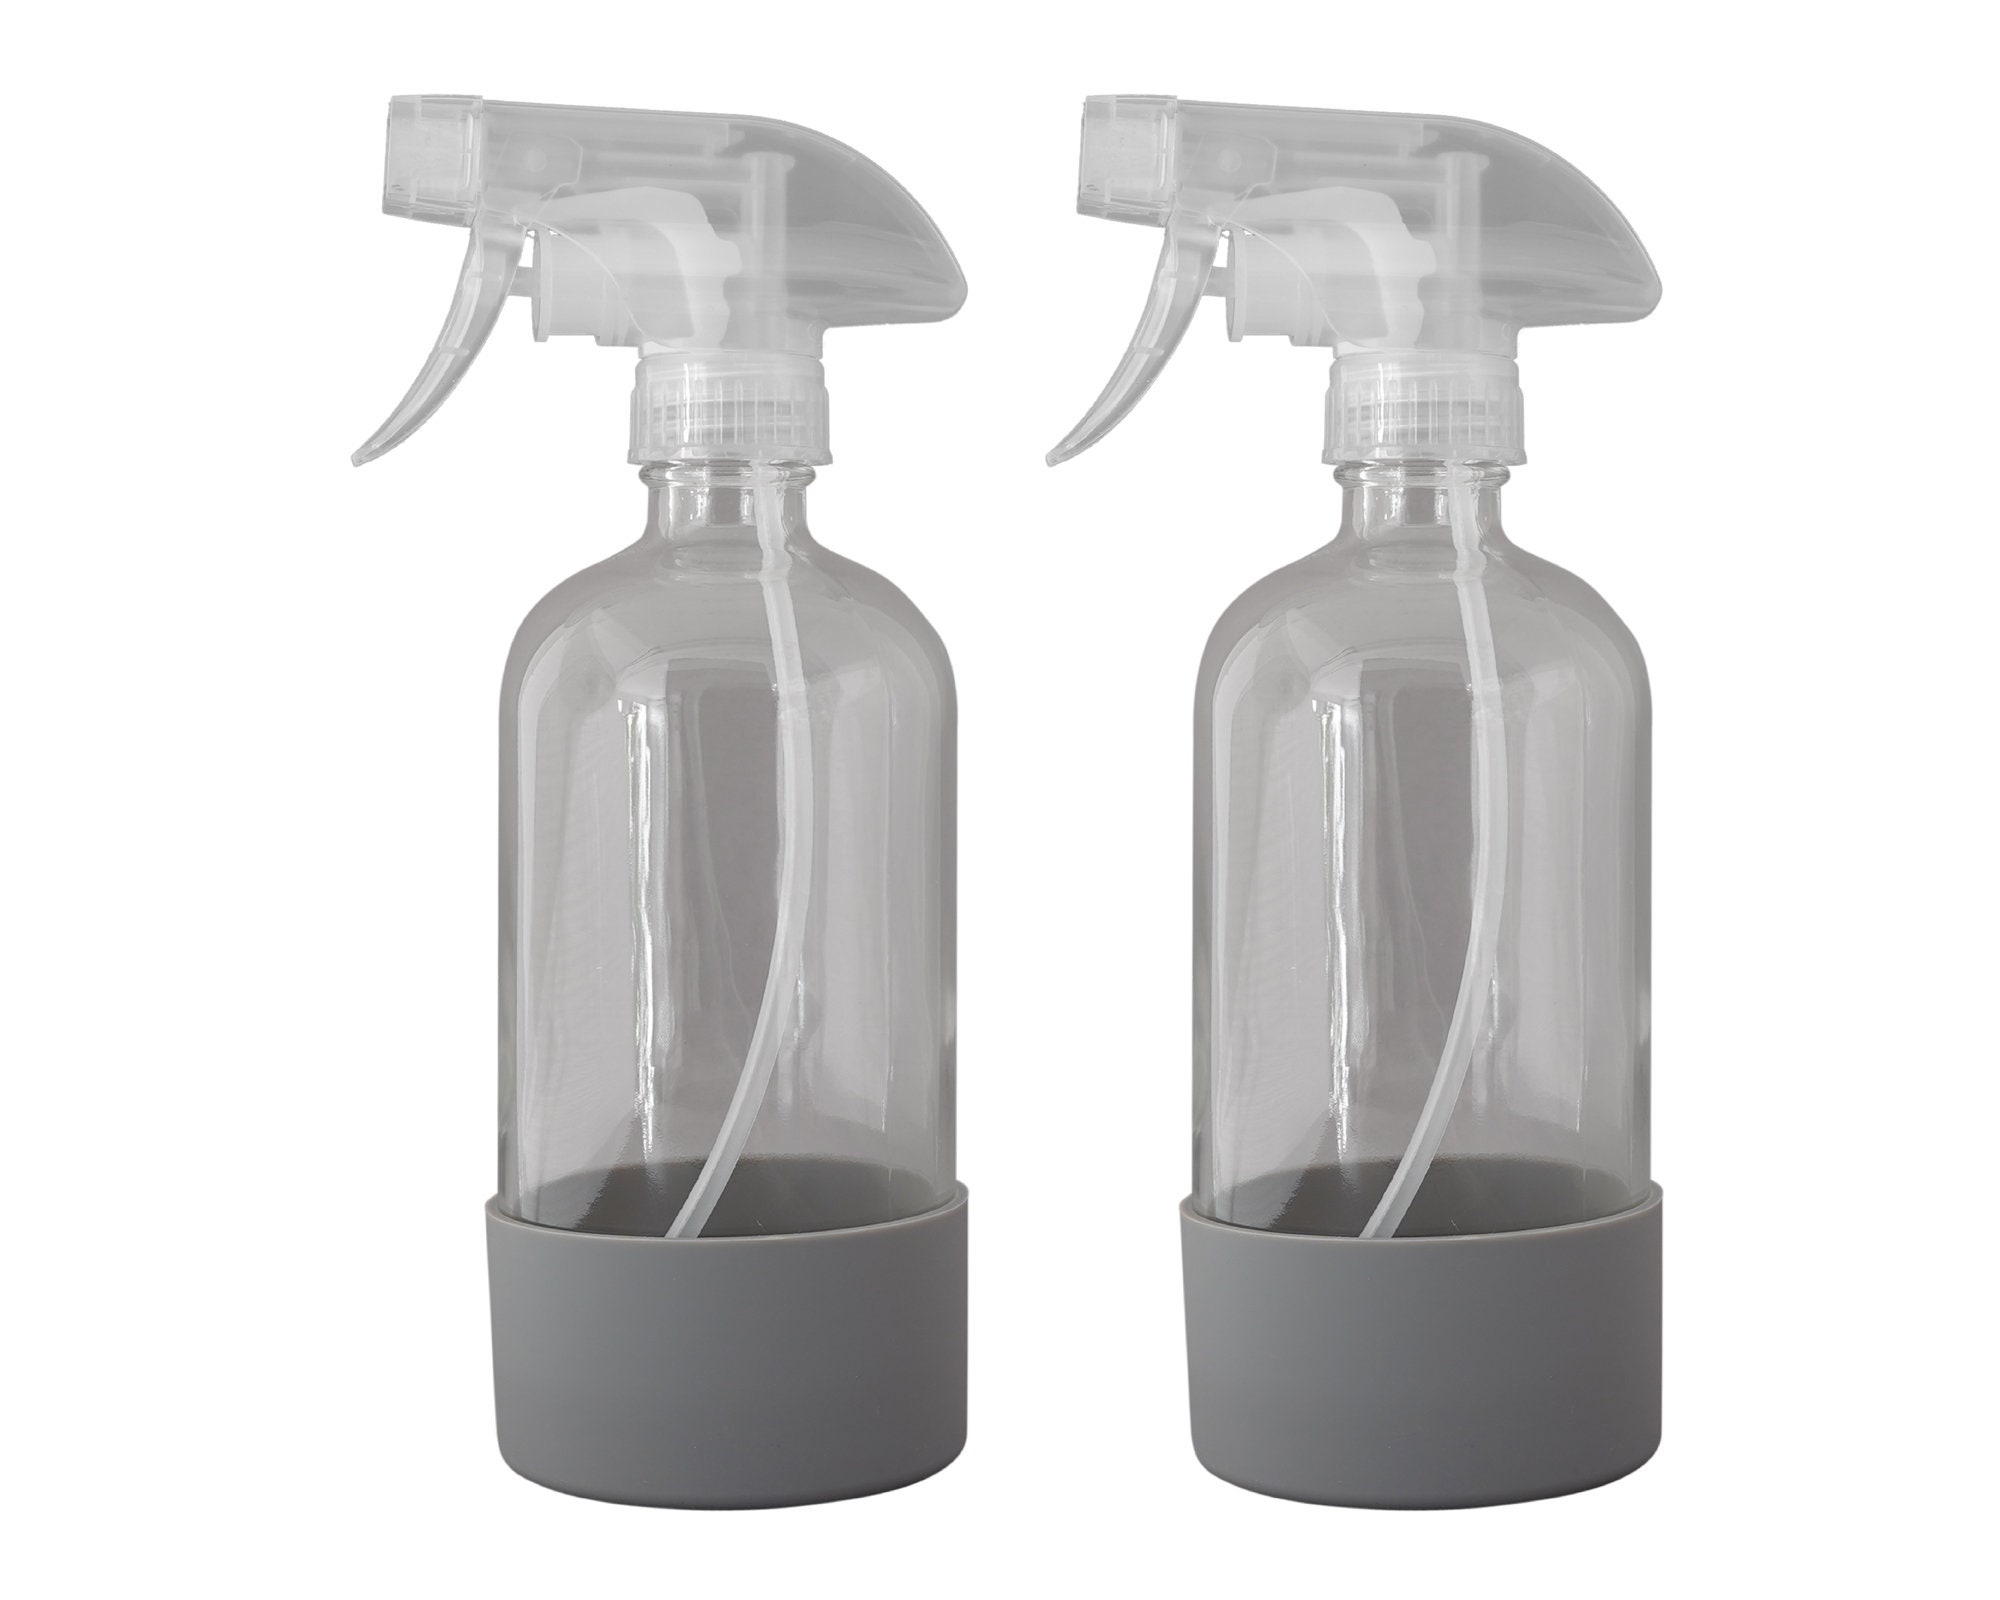 16 Oz Sani-Spray REFILL Bottles, (4 Pack)